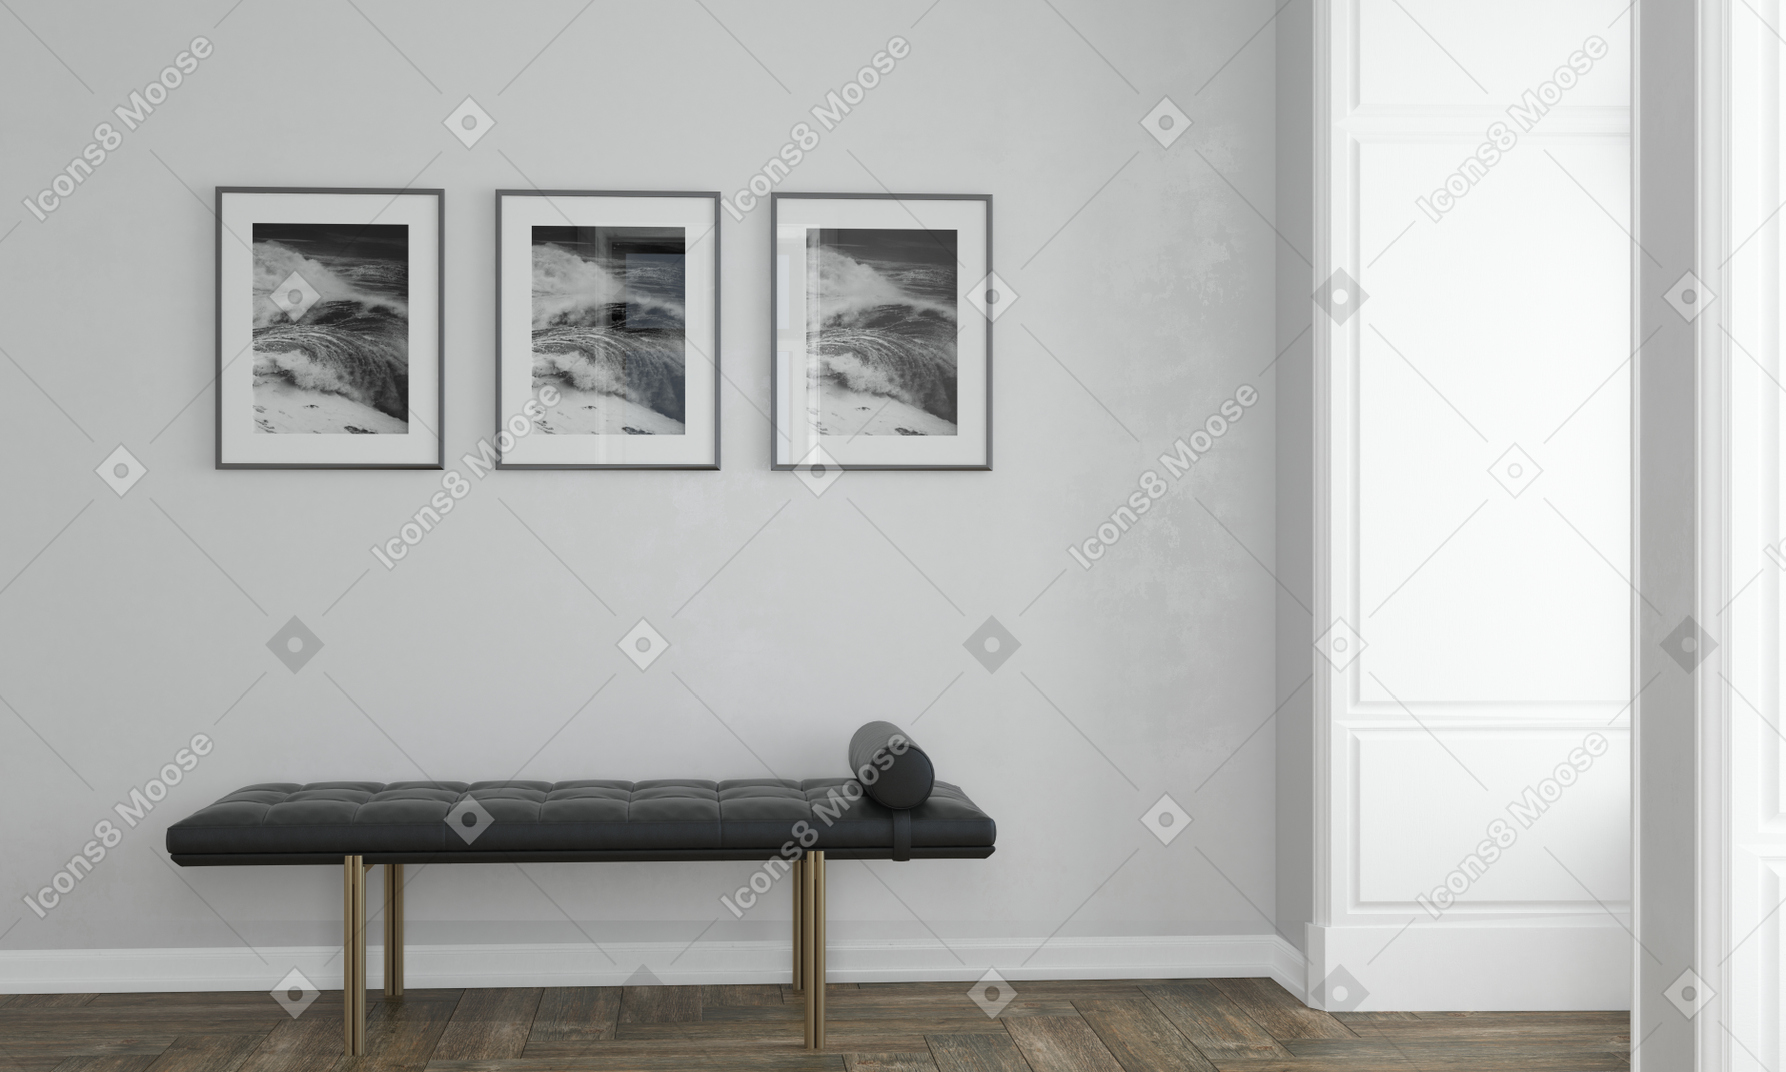 검은색 마사지 테이블이 있는 흰색 방